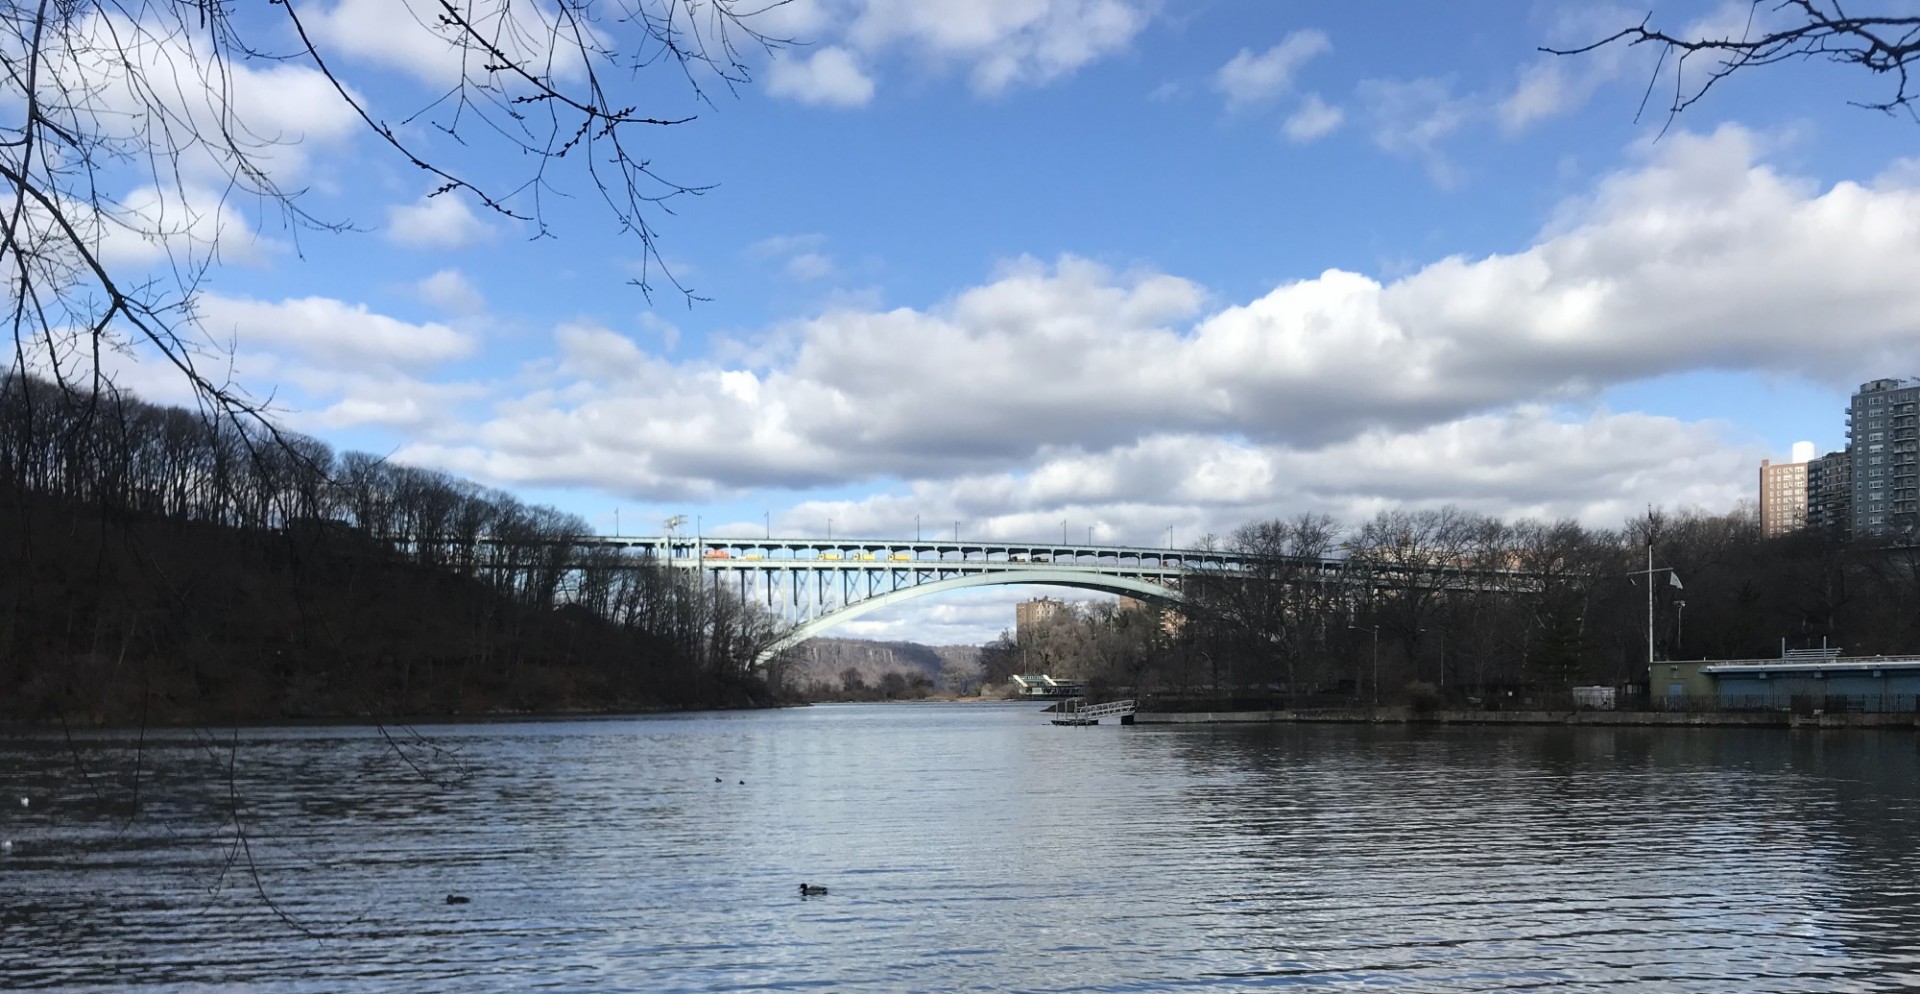 Image of bridge over water